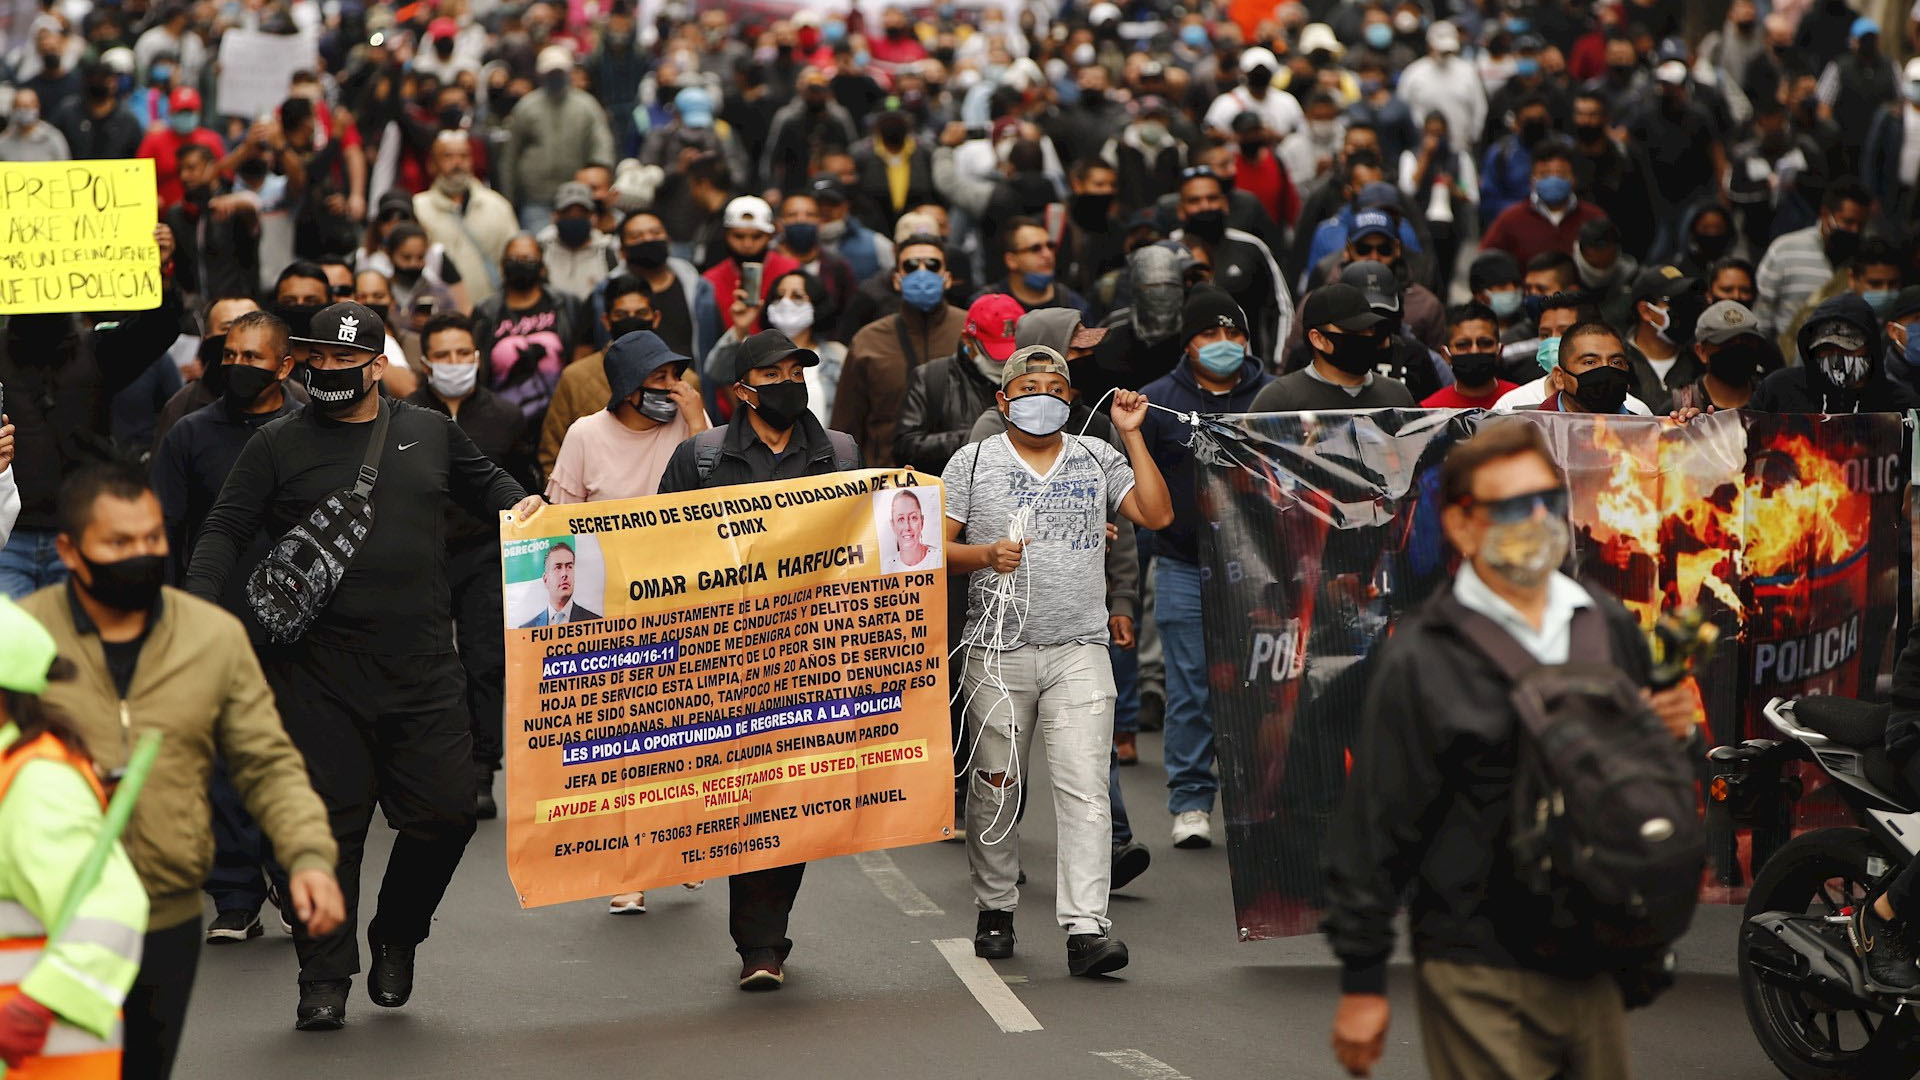 Policías de la Ciudad de México protestan ante “criminalización” de su labor